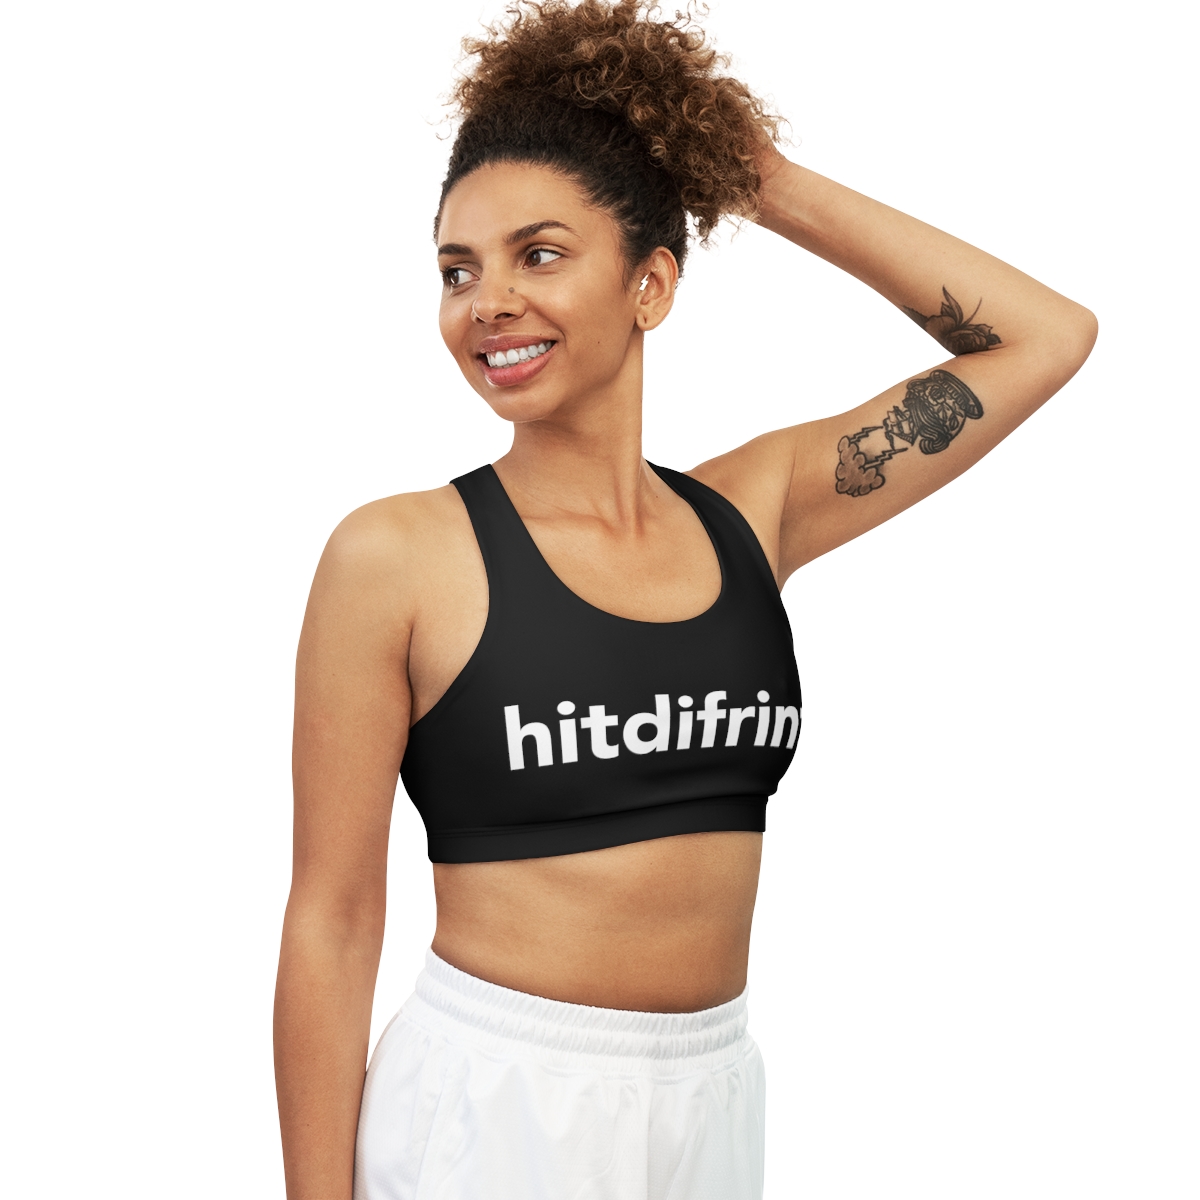 Hitdifrint original womens sports bra